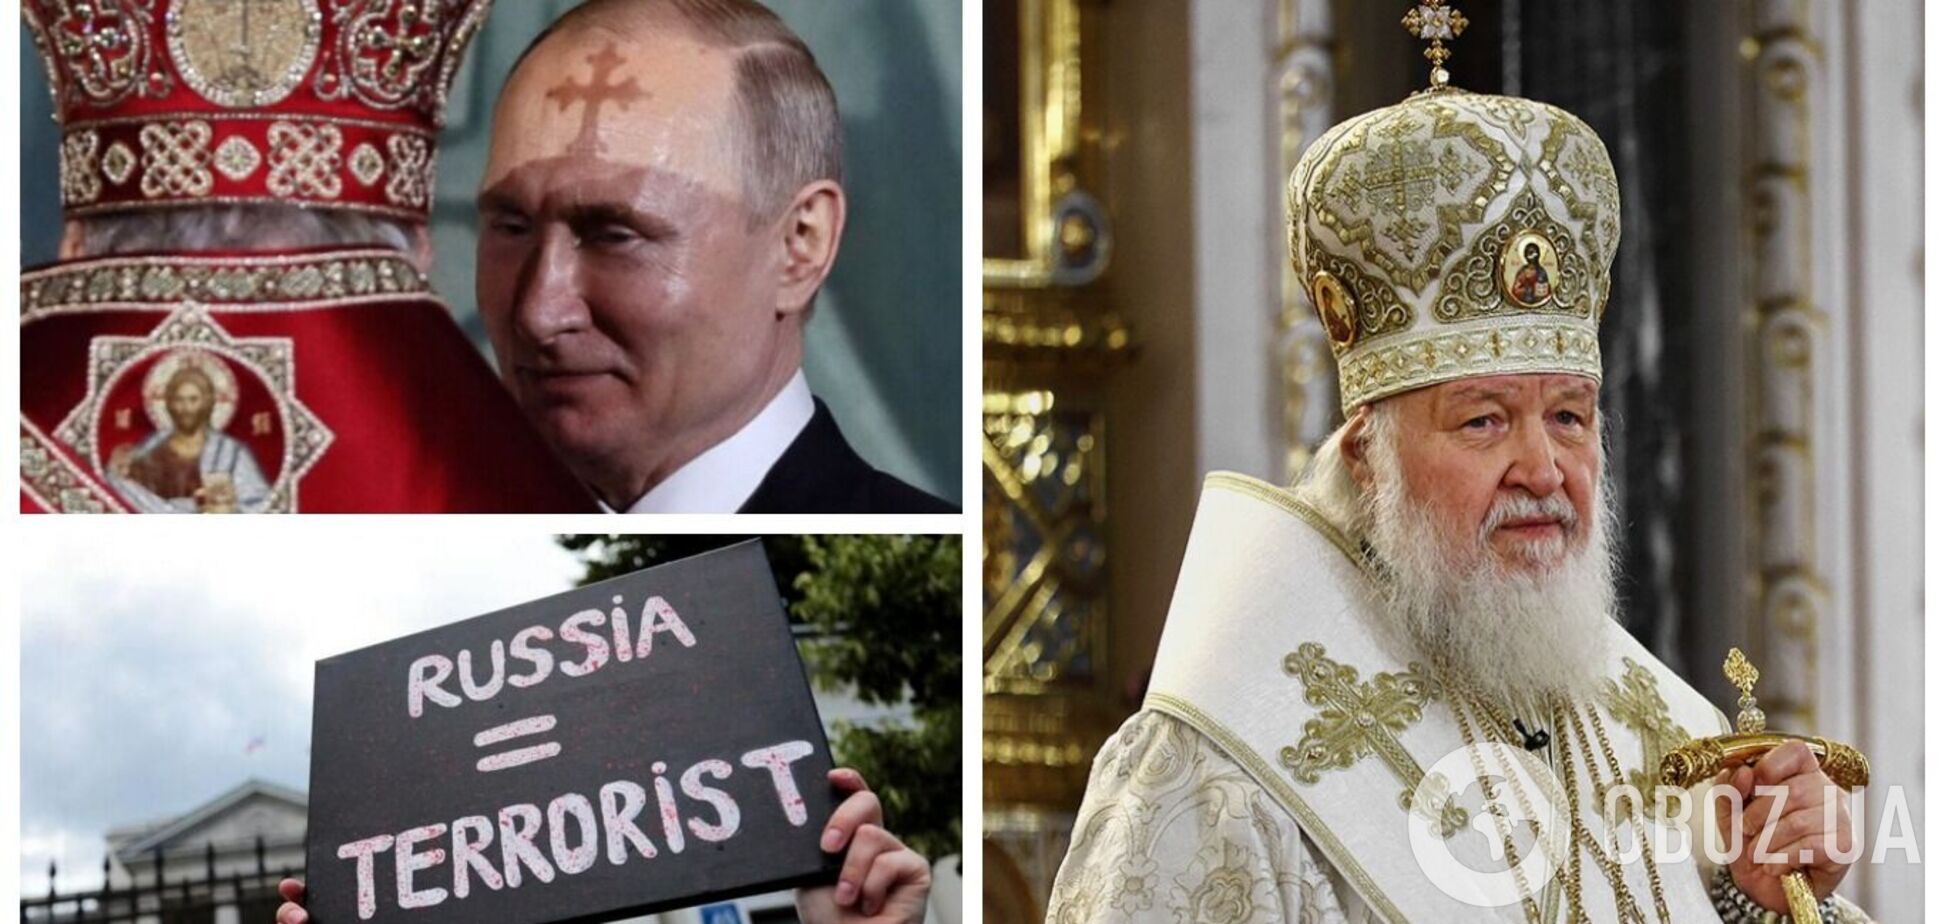 'Війна ще не програна': глава РПЦ Кирило закликав до боротьби з 'антихристом' і нарвався на відповідь у мережі. Відео